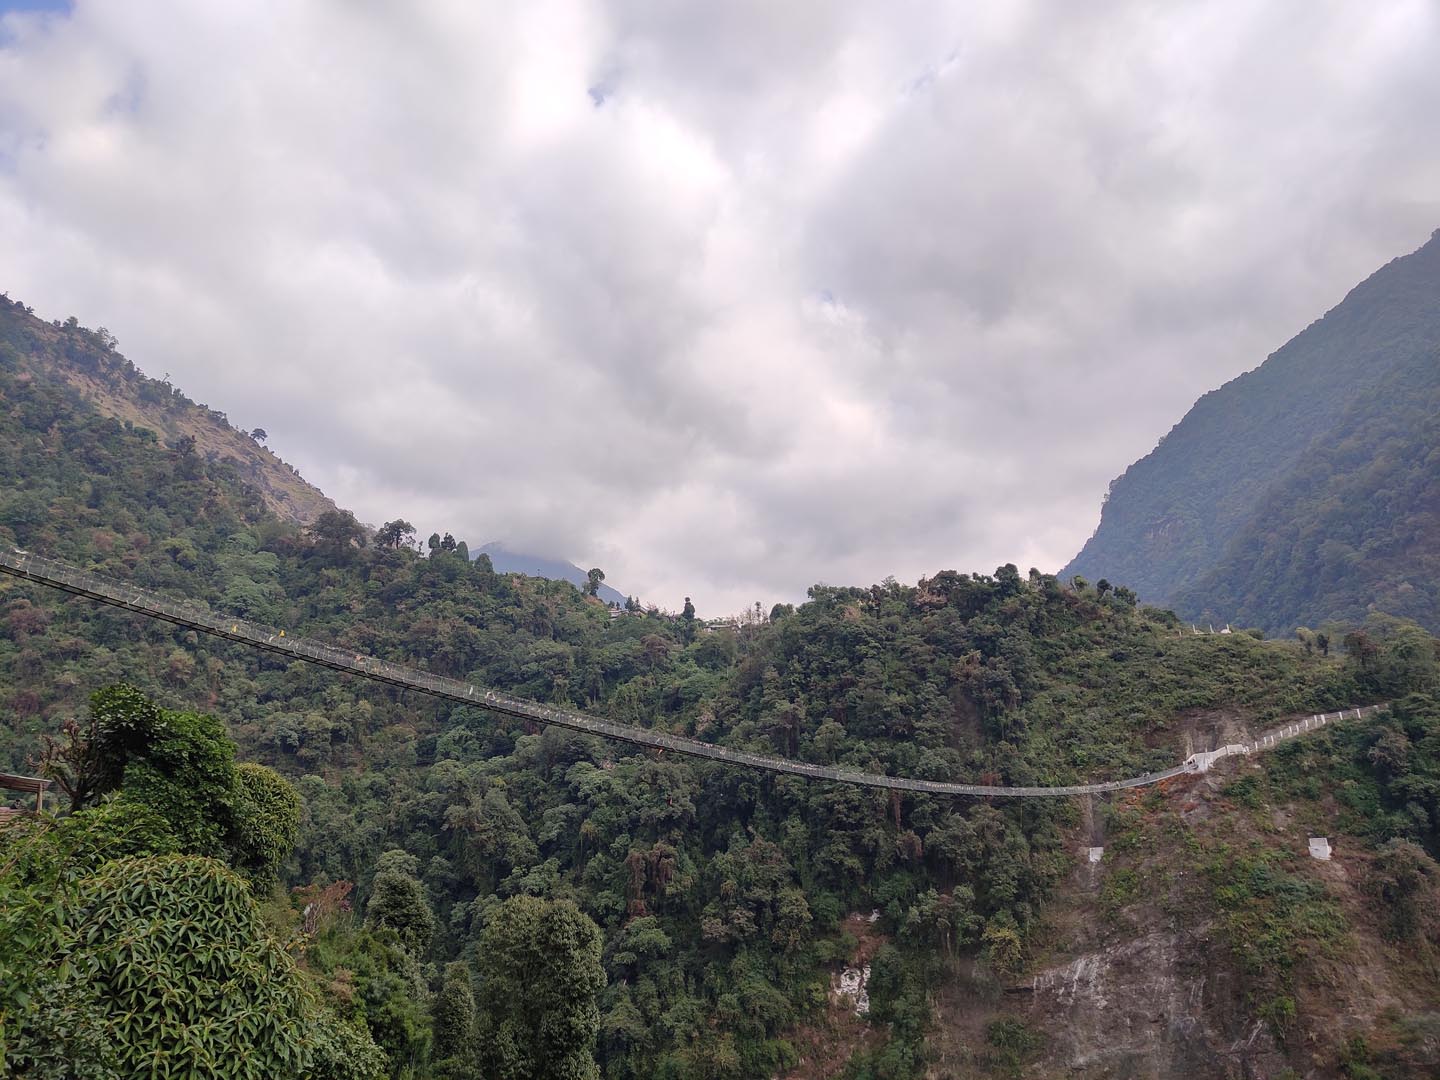 Suspension Bridge at Annapurna region